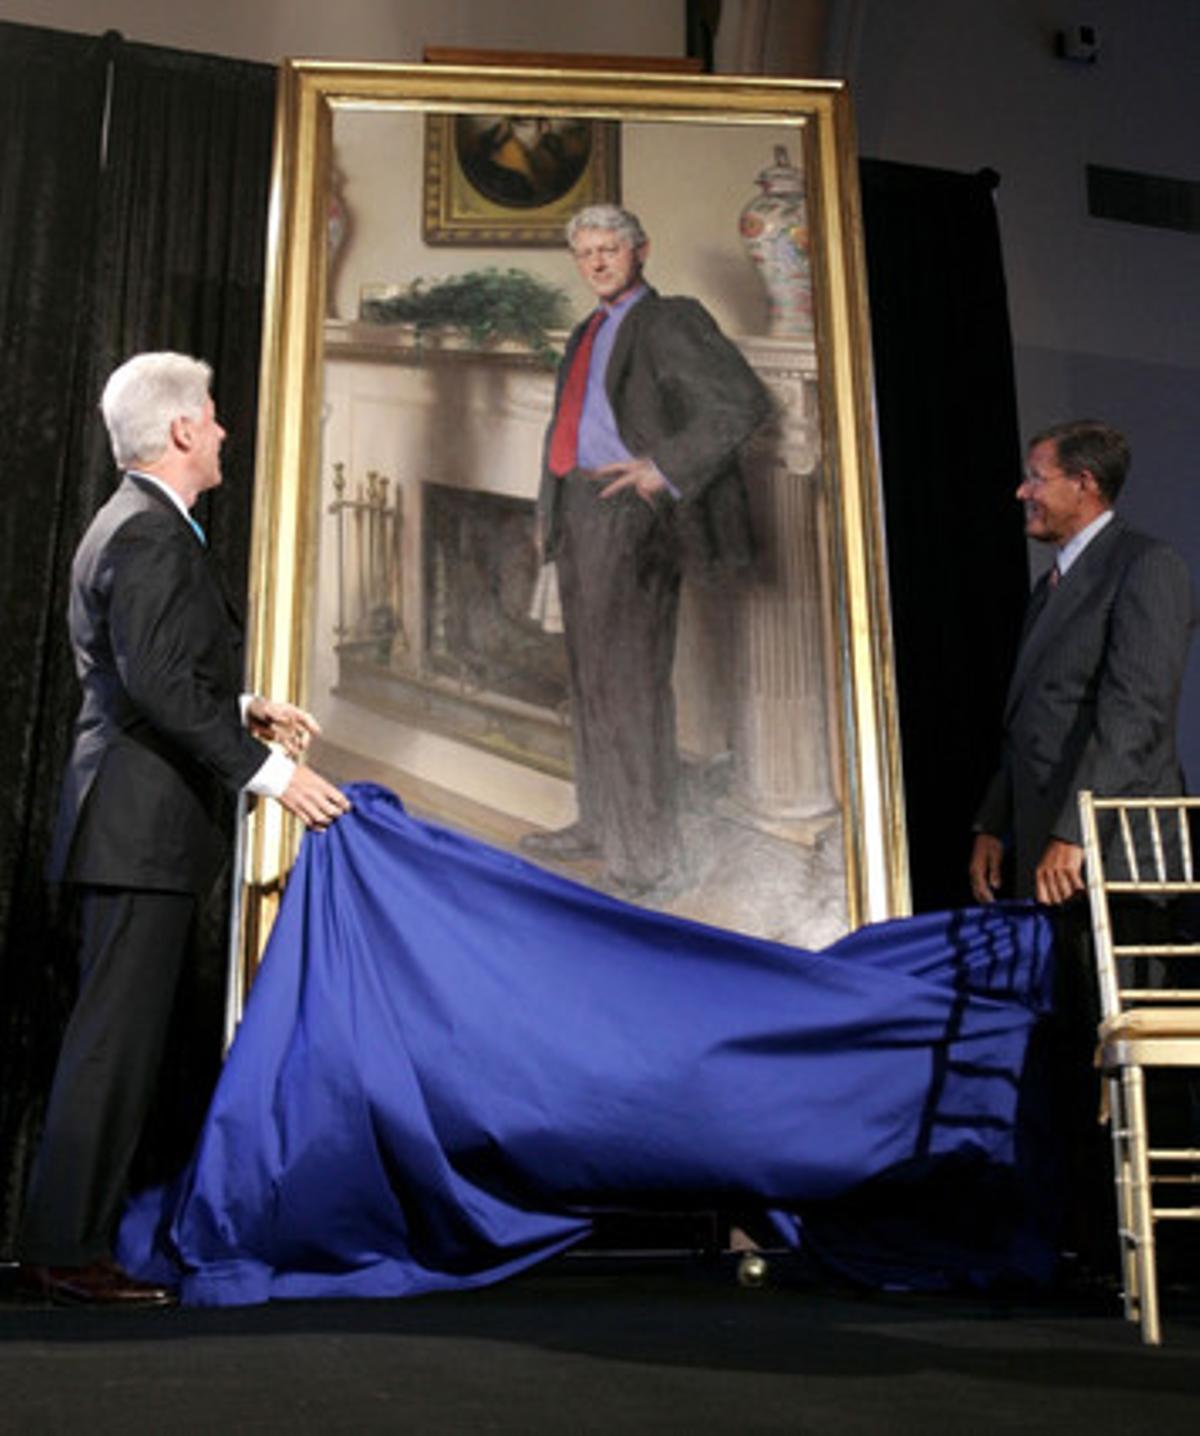 El vestido azul de Monica Lewinsky, en el retrato de Bill Clinton